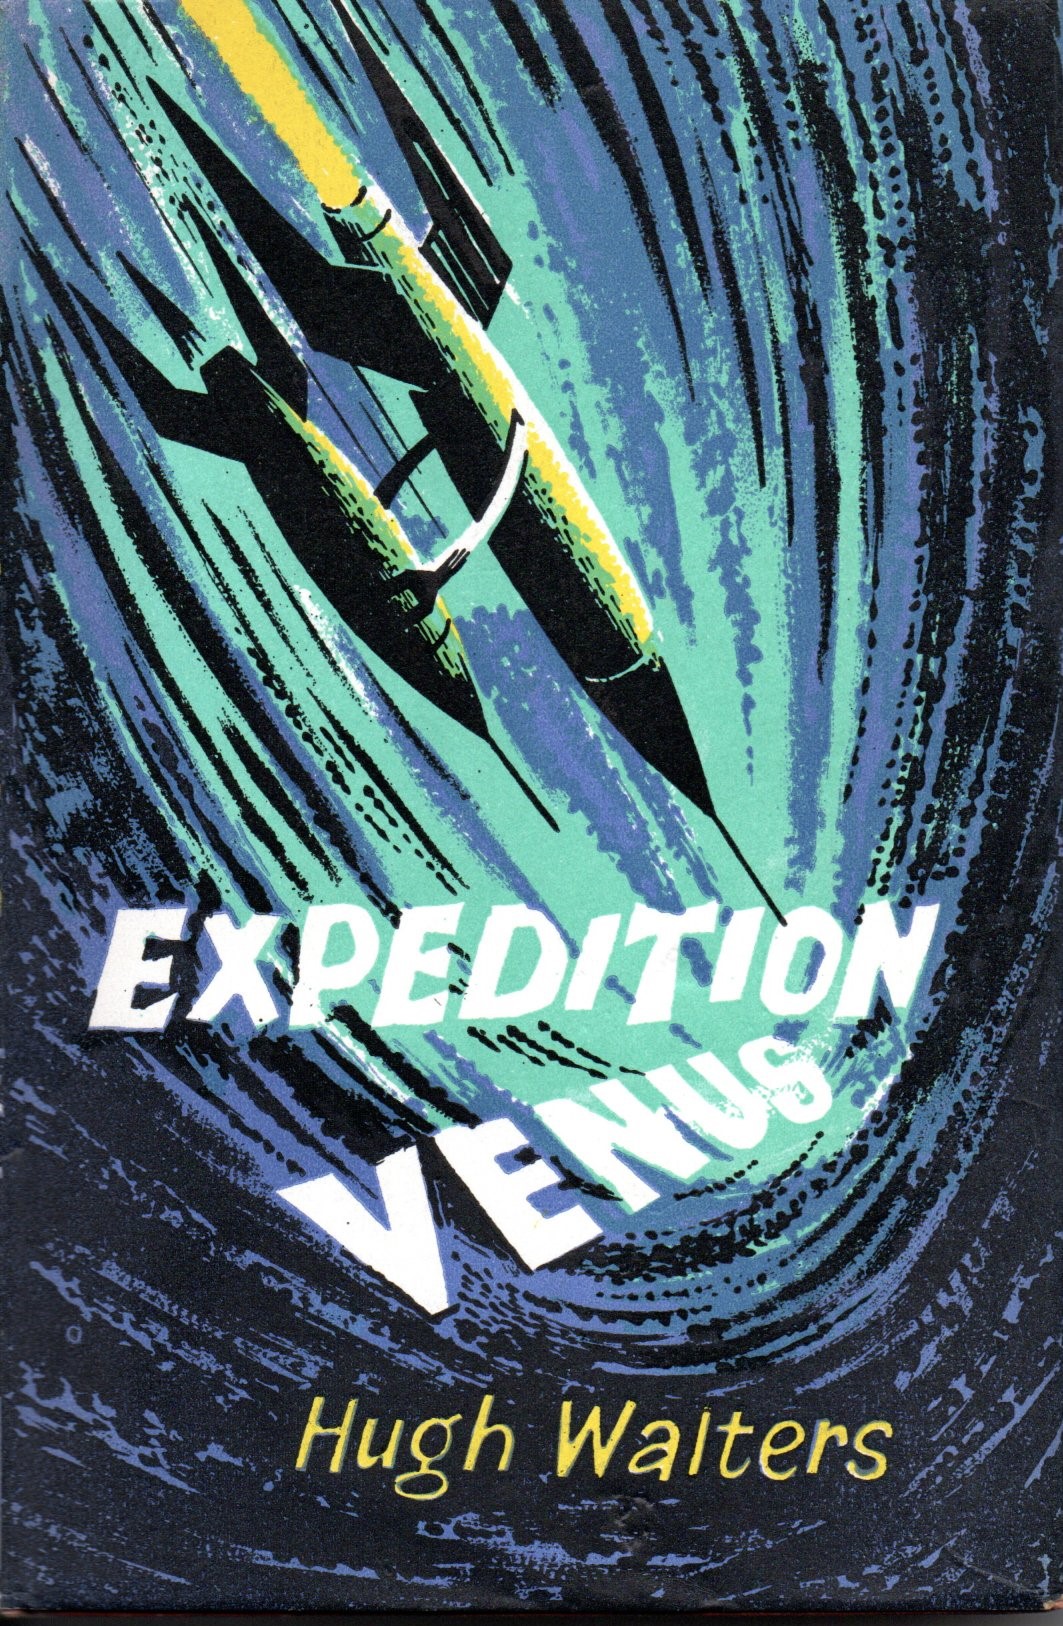 expedition venus